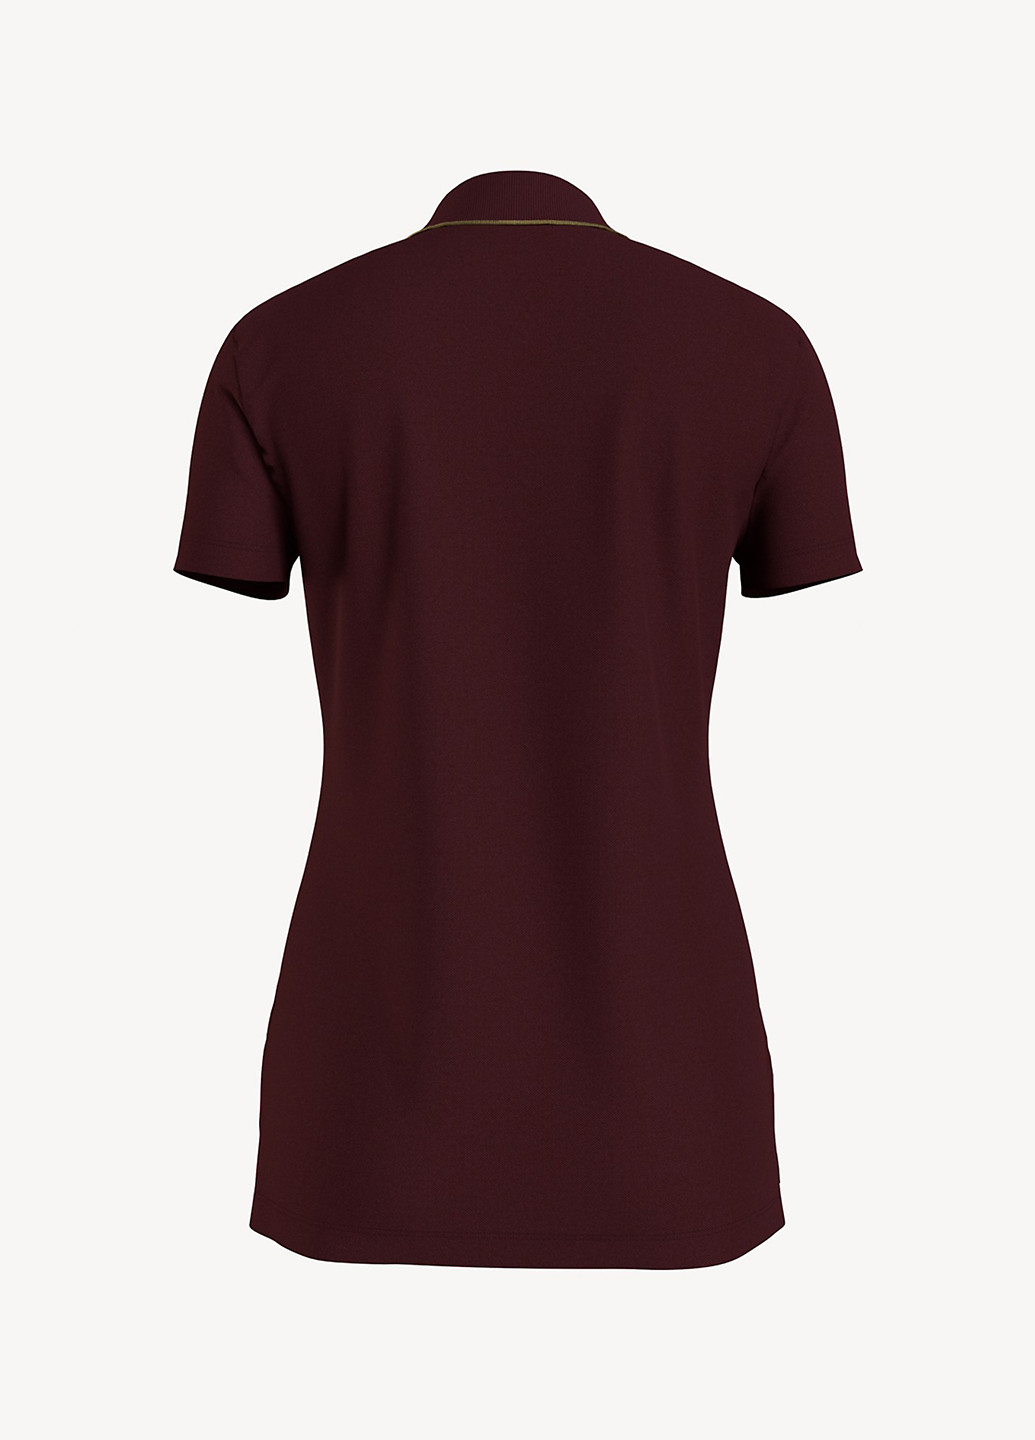 Бордовая женская футболка-поло Tommy Hilfiger однотонная